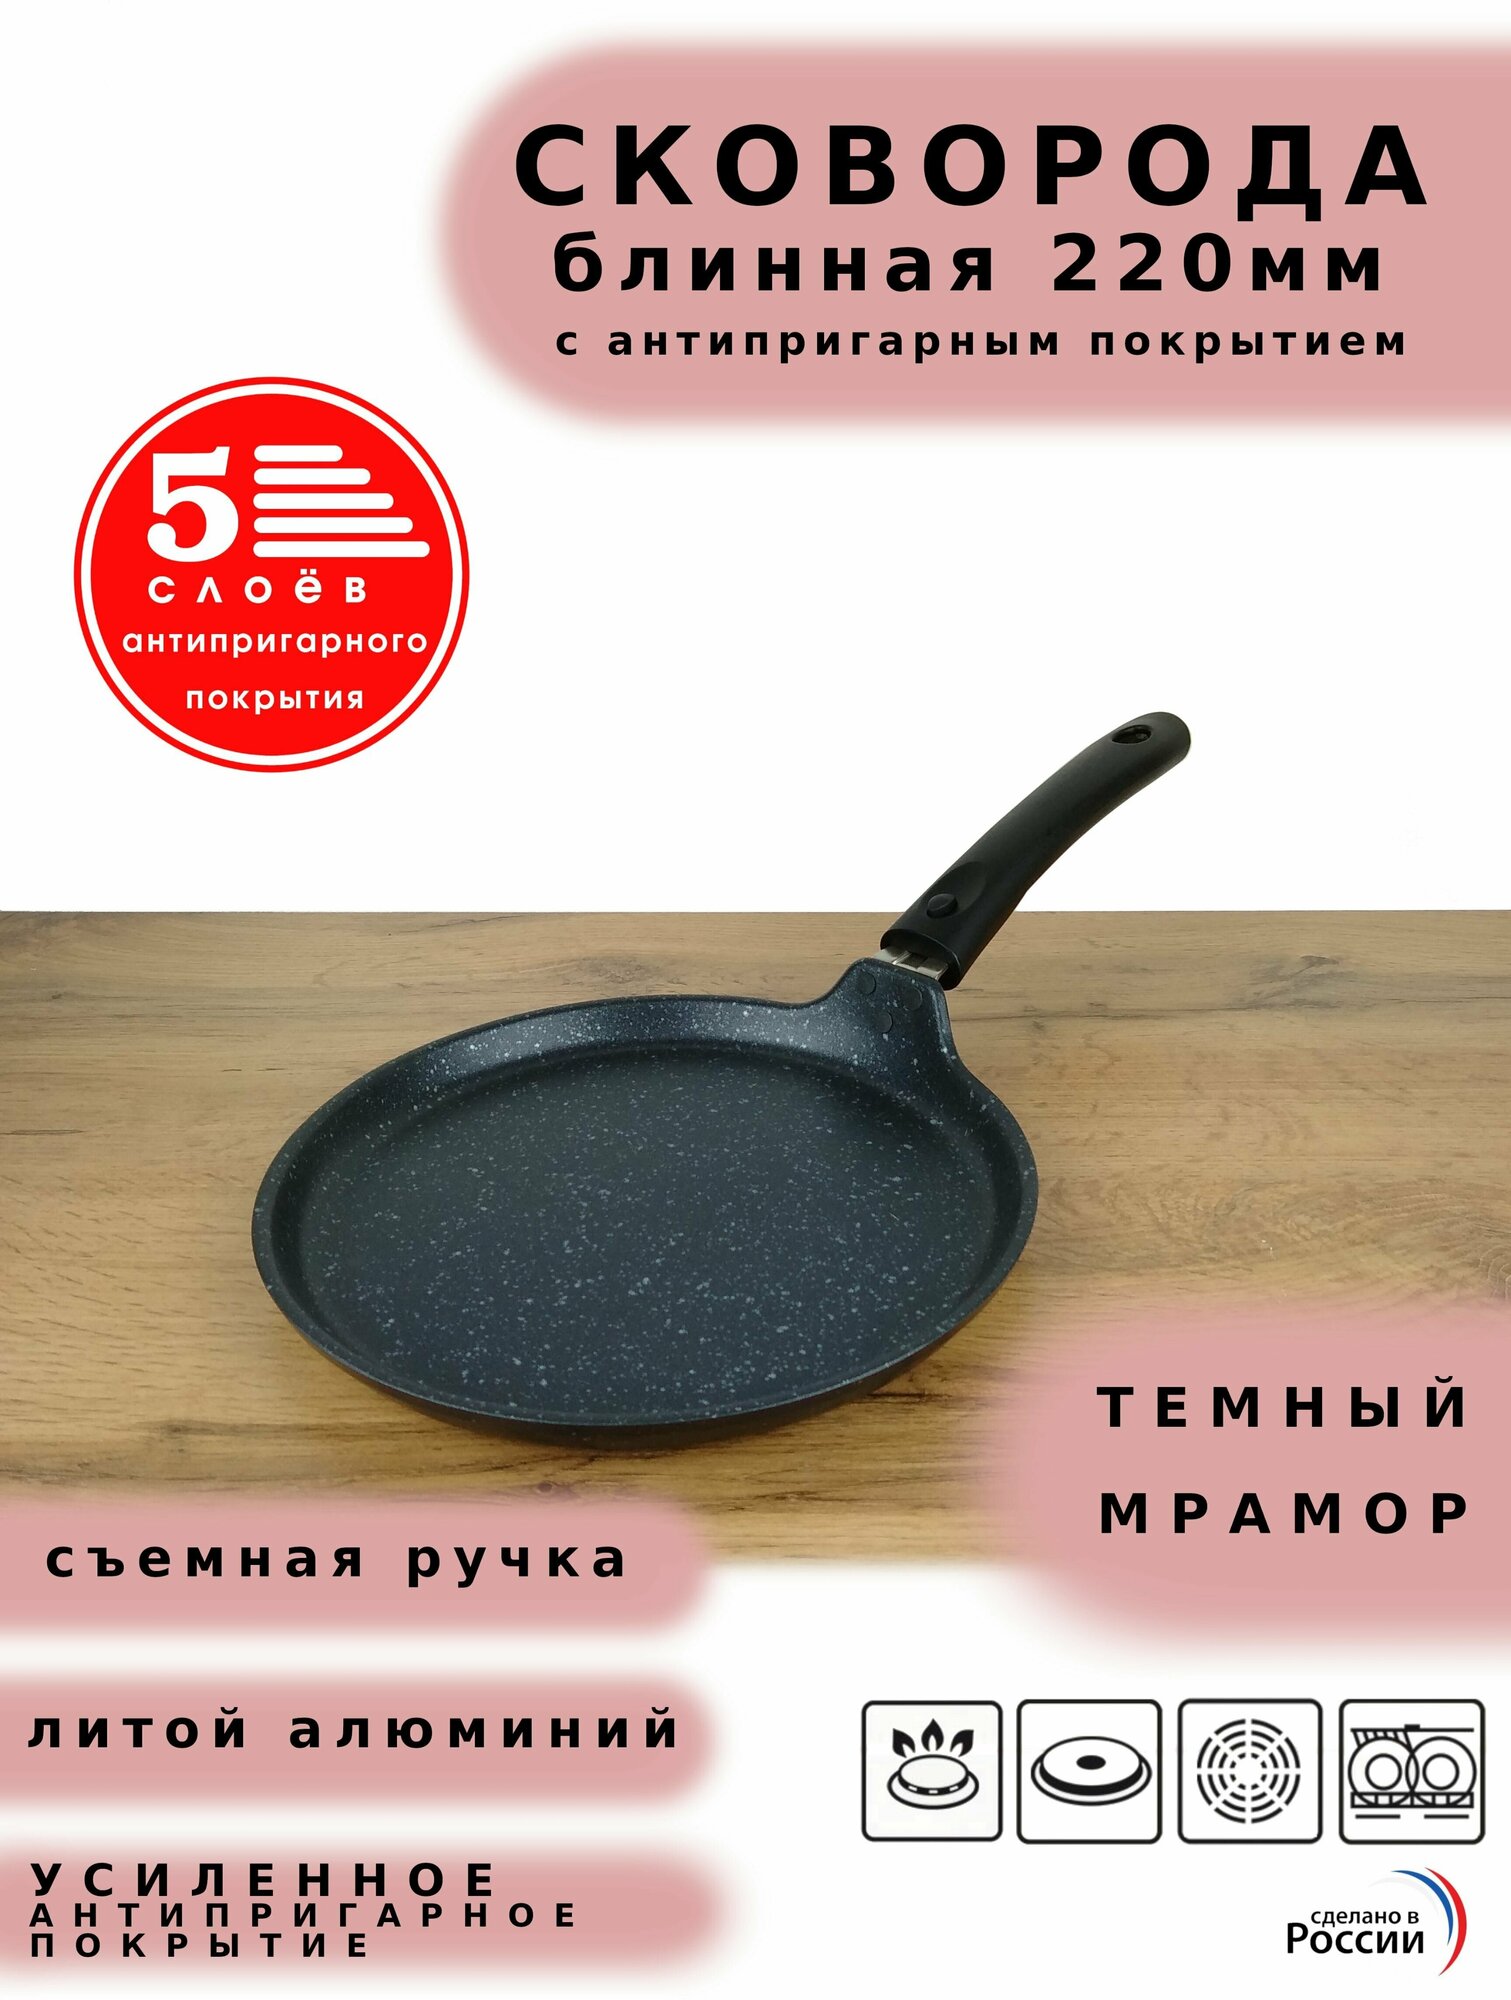 Сковорода блинная Kukmara 22 см, блинница темный мрамор Кукмор